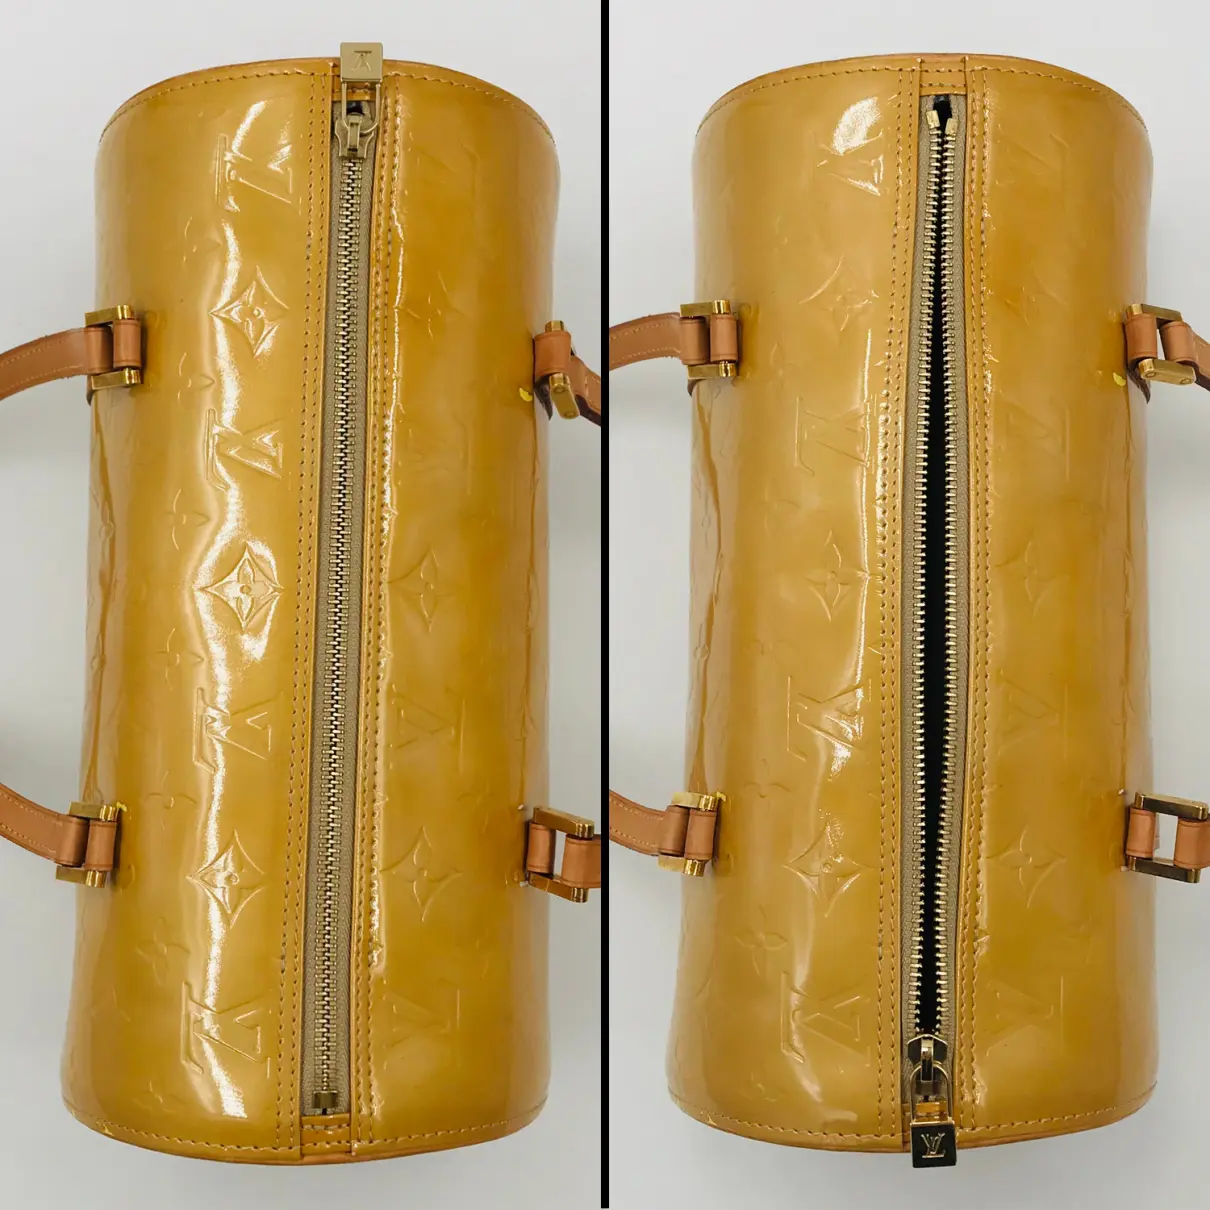 Bedford patent leather handbag Louis Vuitton - Vintage